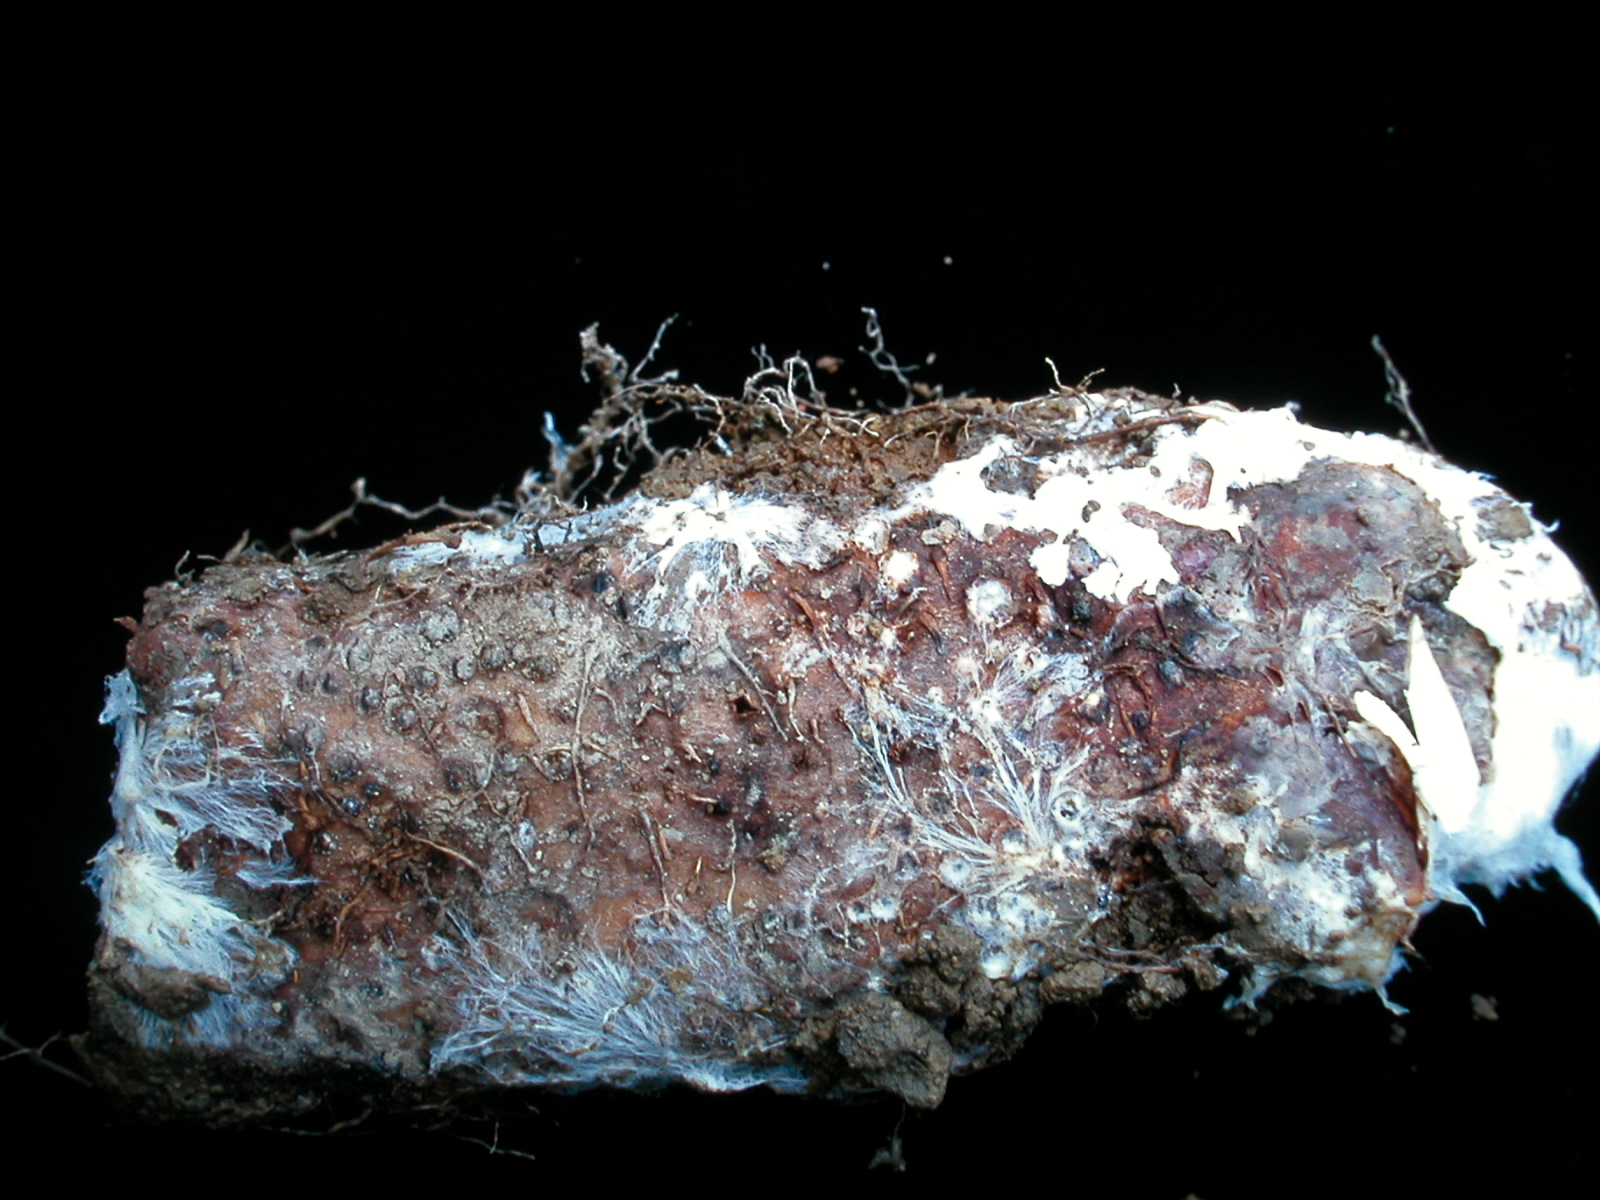 圖1. 山藥薯塊表面出現白色玻璃纖維狀菌絲為白絹病菌感染，不可當作種薯